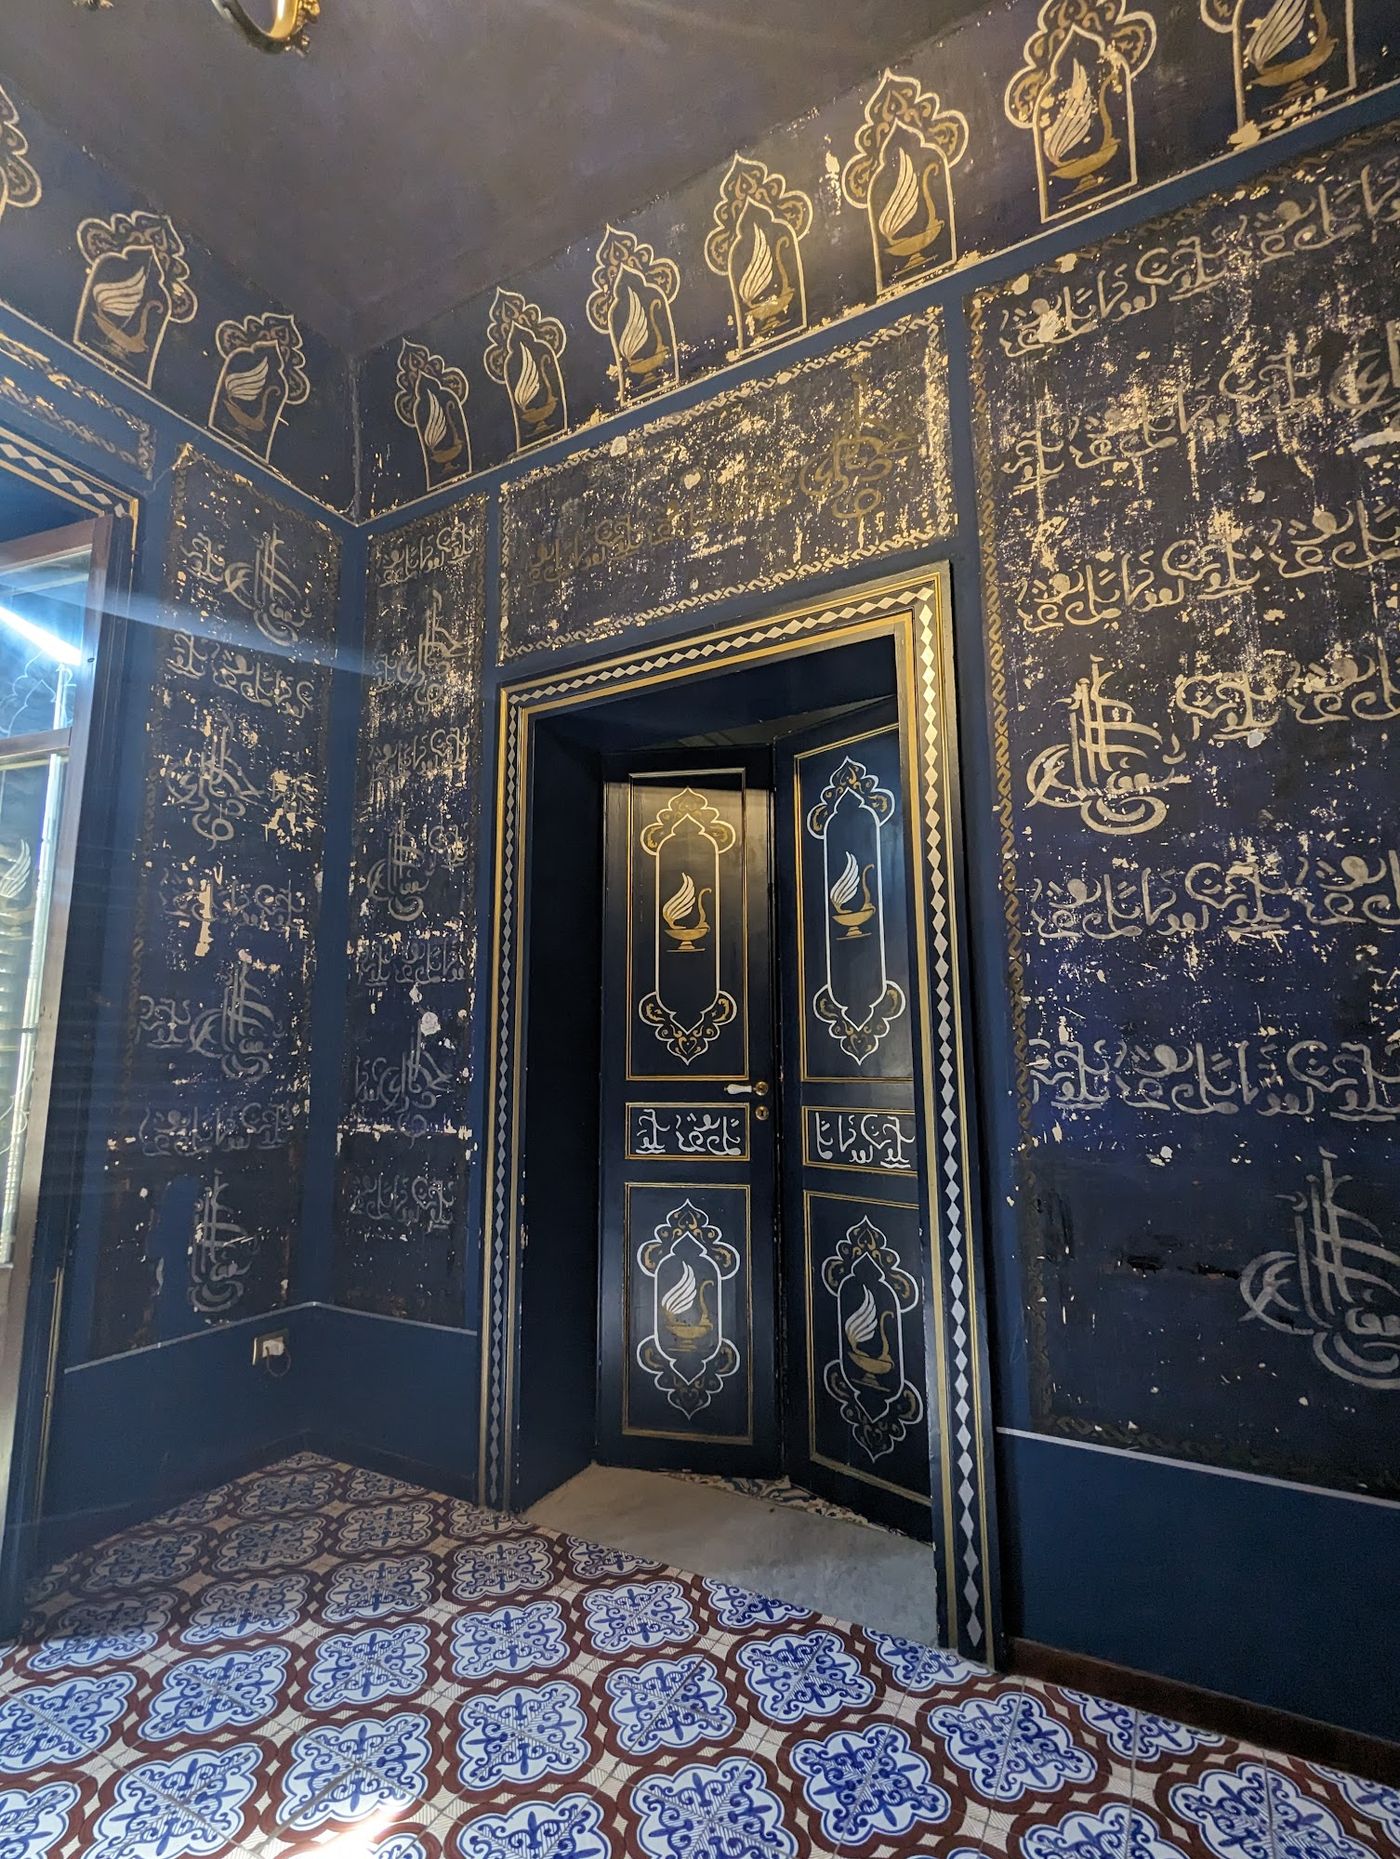 Geheime Kammer mit arabischen Inschriften